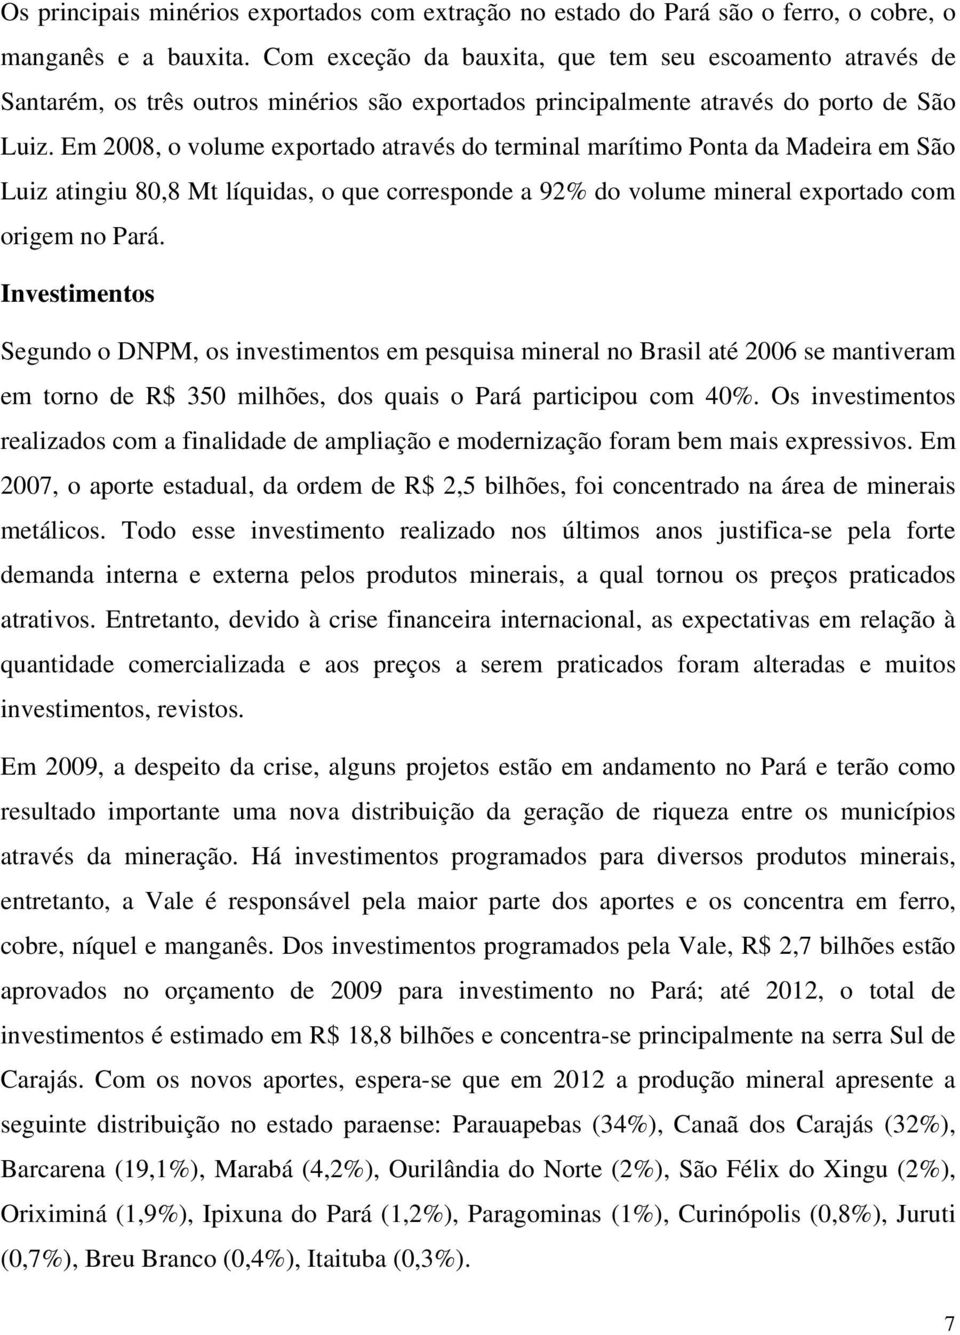 Em 2008, o volume exportado através do terminal marítimo Ponta da Madeira em São Luiz atingiu 80,8 Mt líquidas, o que corresponde a 92% do volume mineral exportado com origem no Pará.